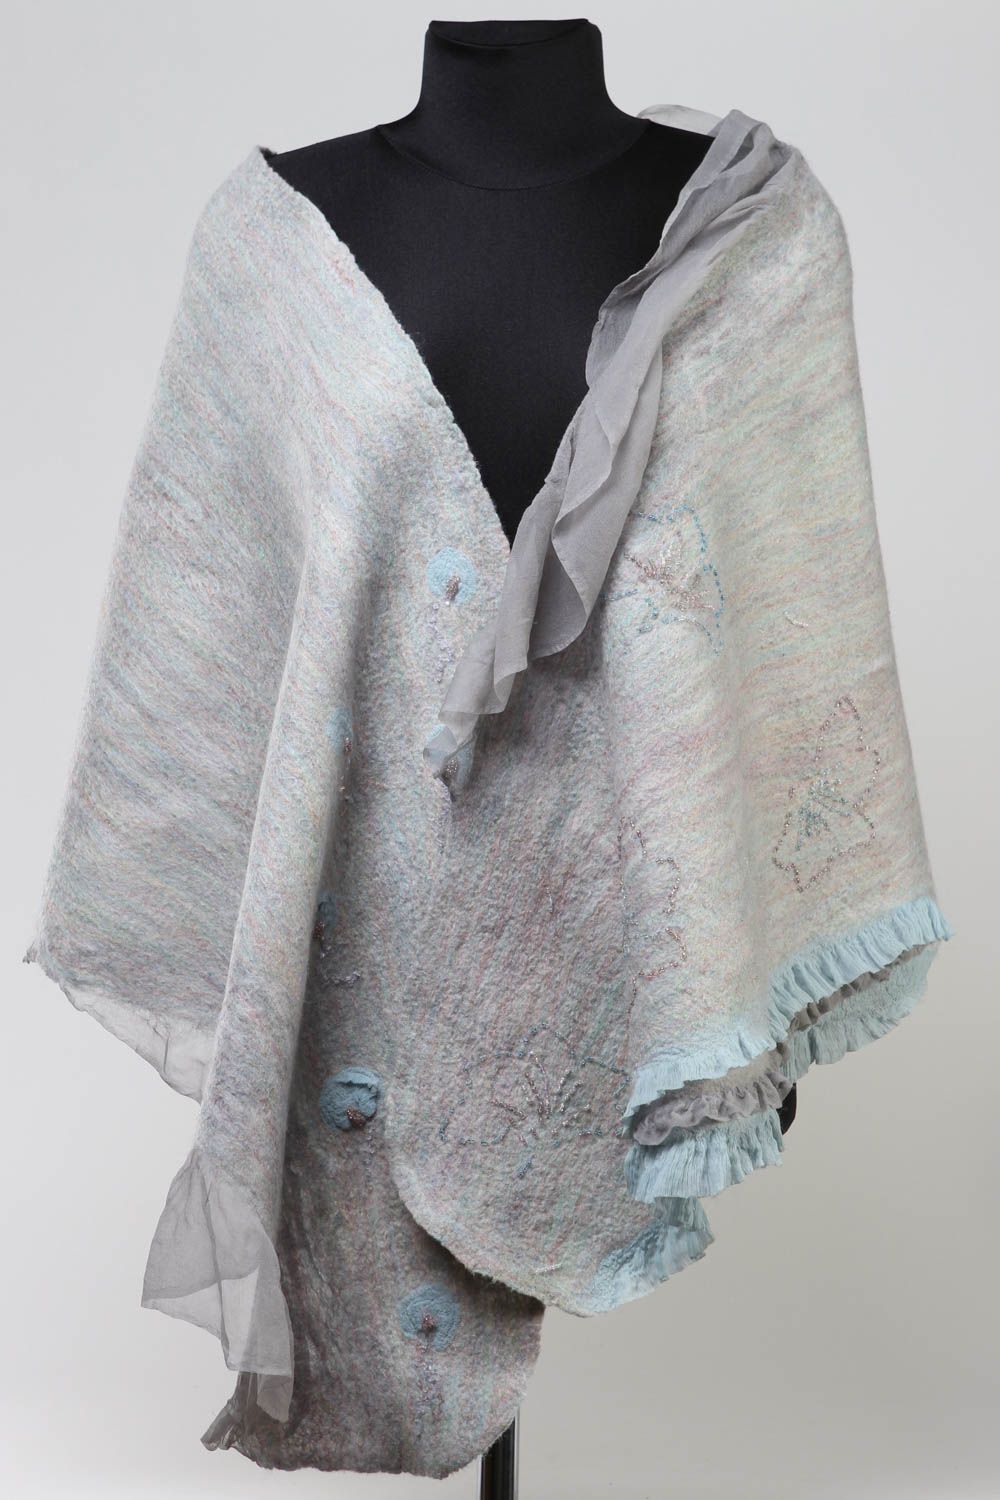 Grande écharpe Châle fait main soie laine feutrée Vêtements pour femme photo 1